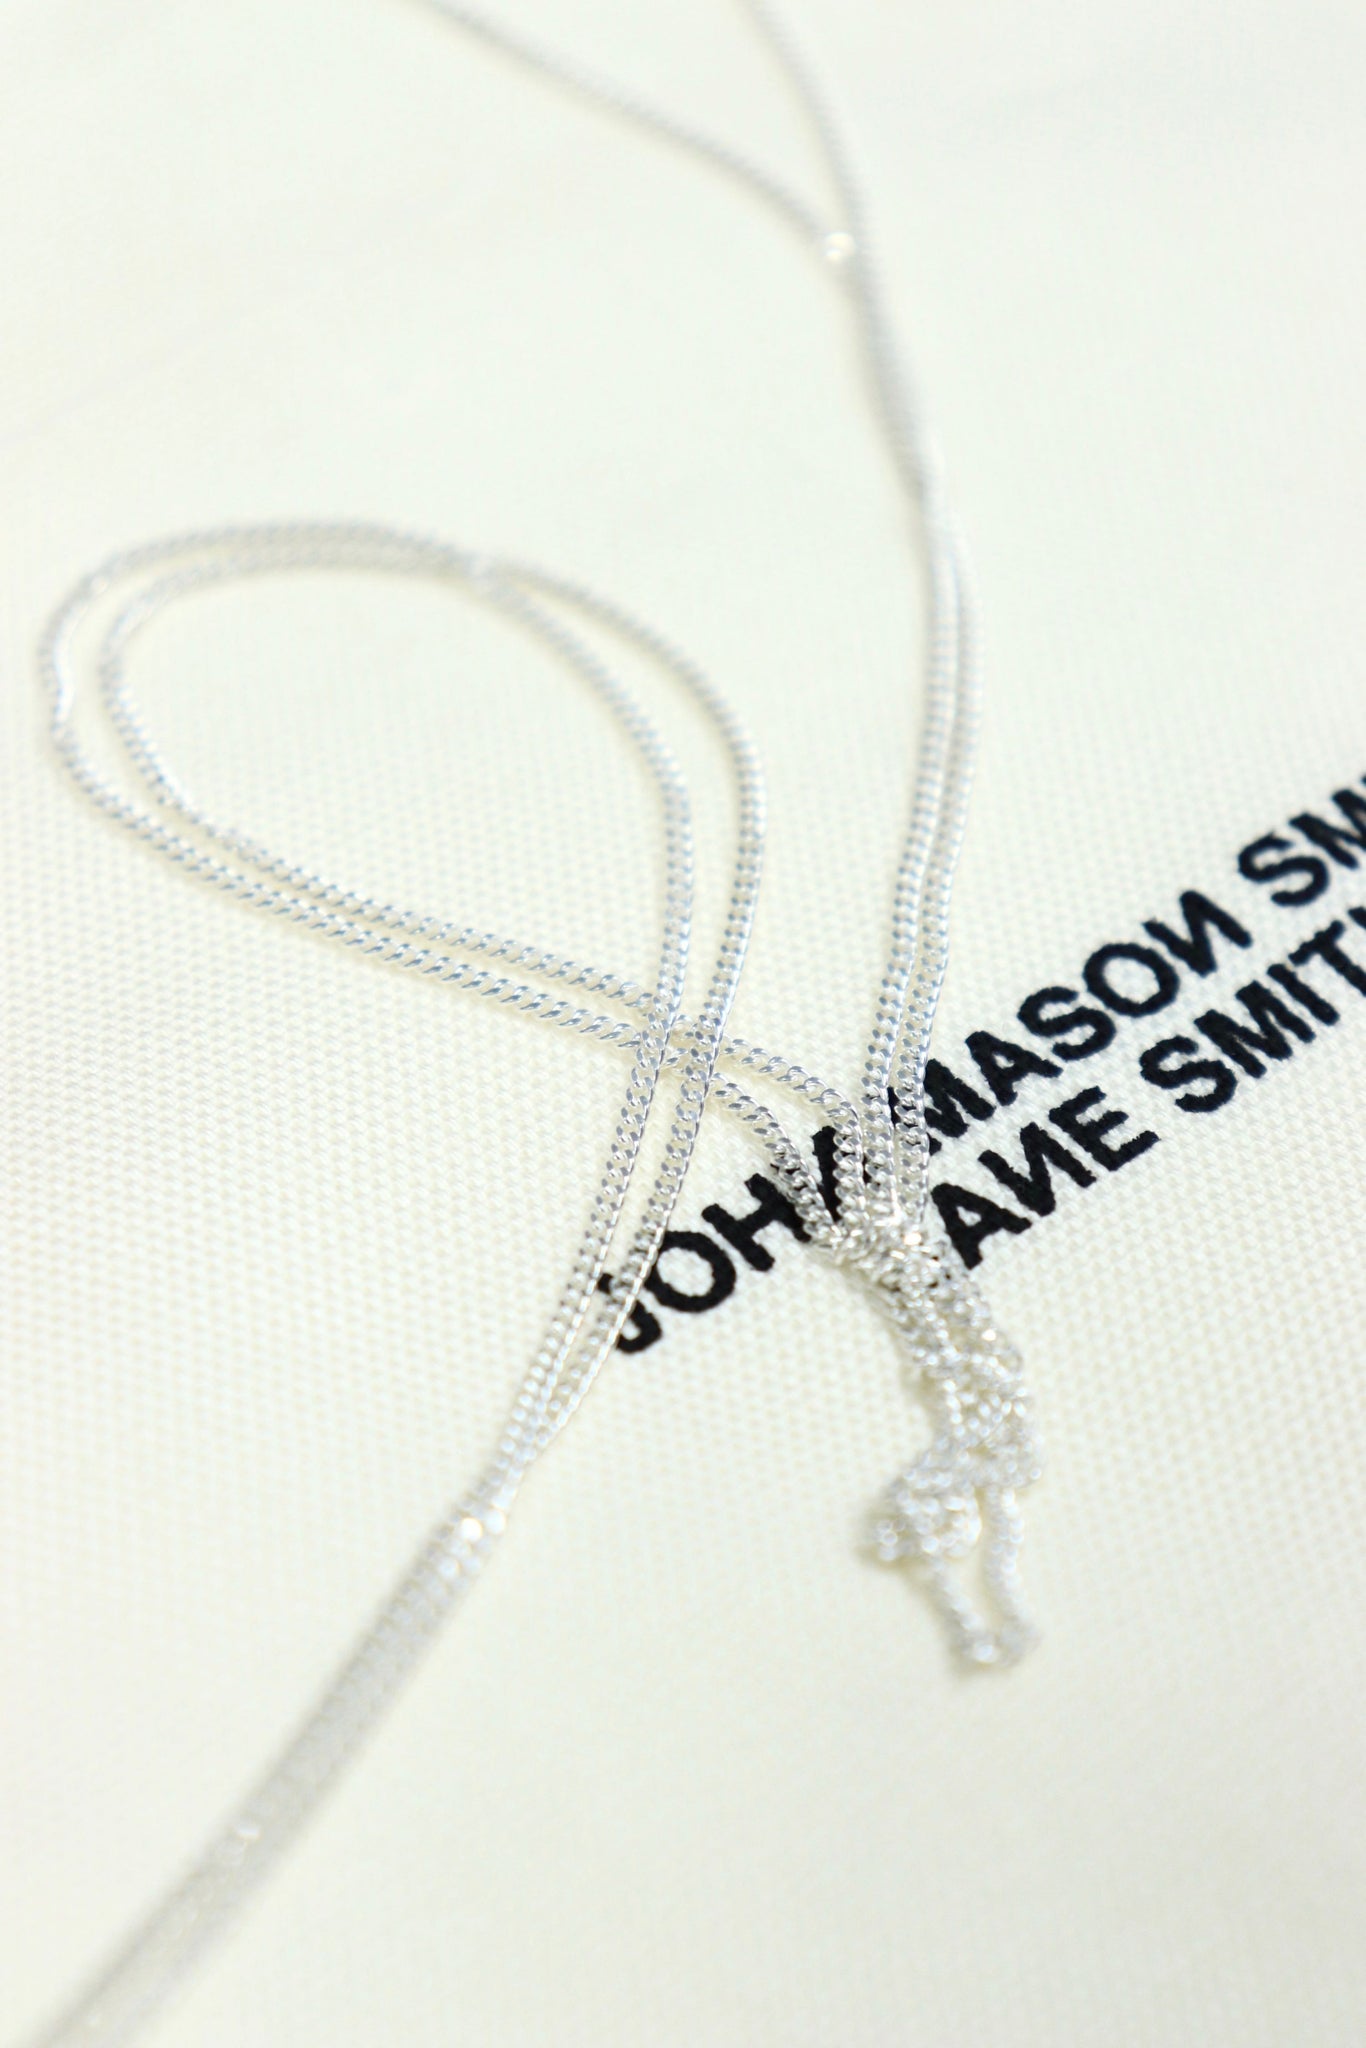 John Mason Miss necklace image